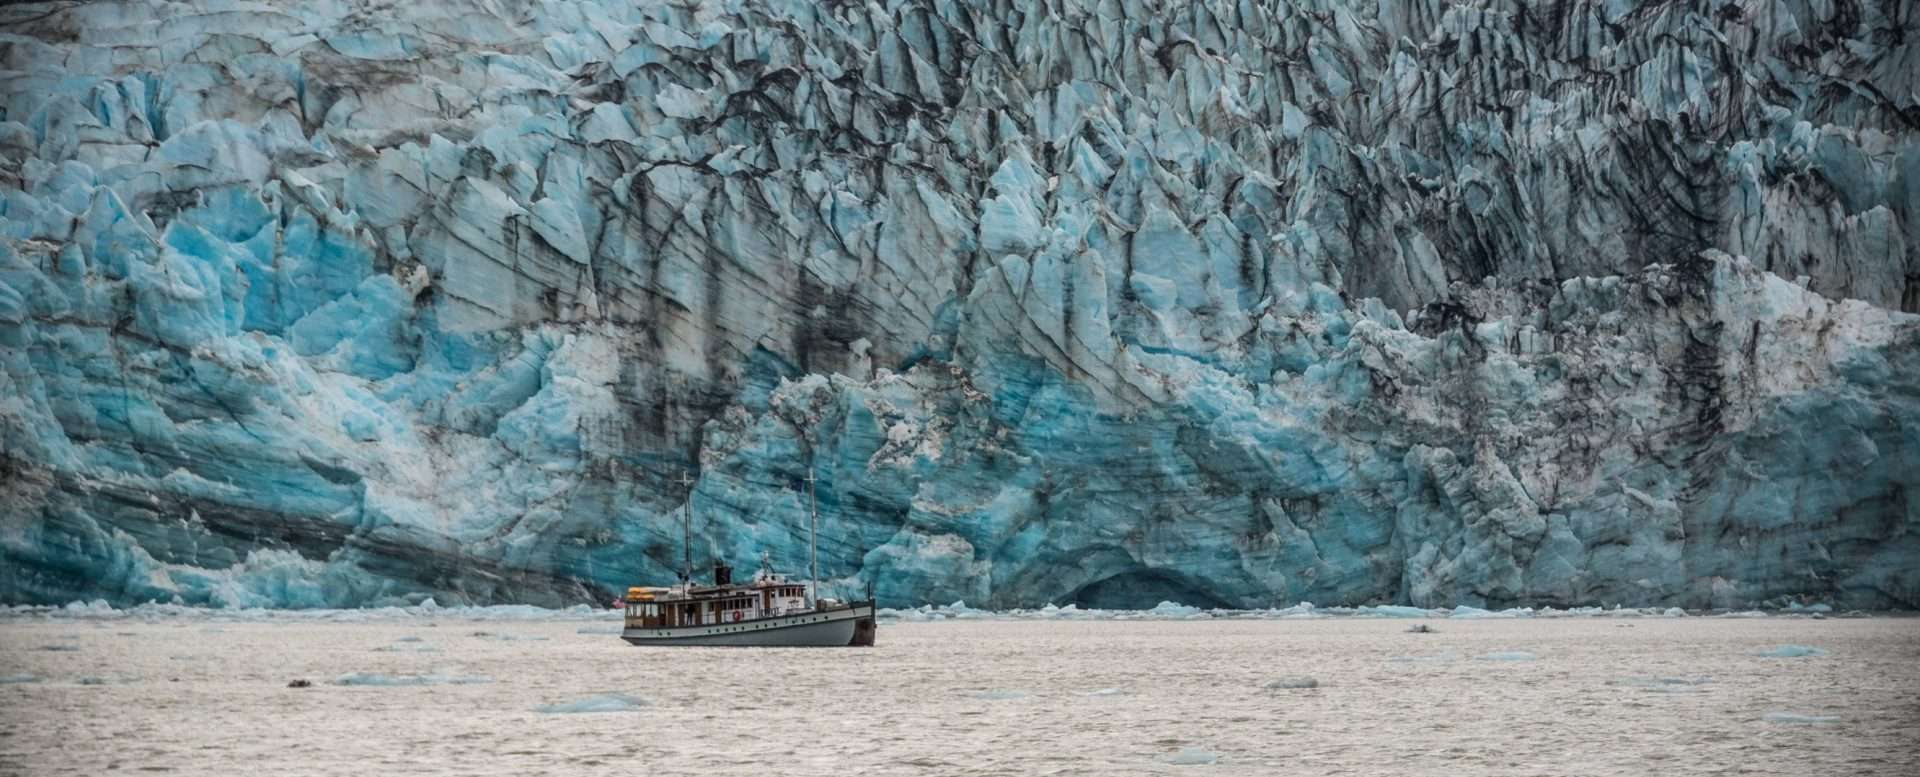 Boat in front of glacier in Glacier Bay National Park.